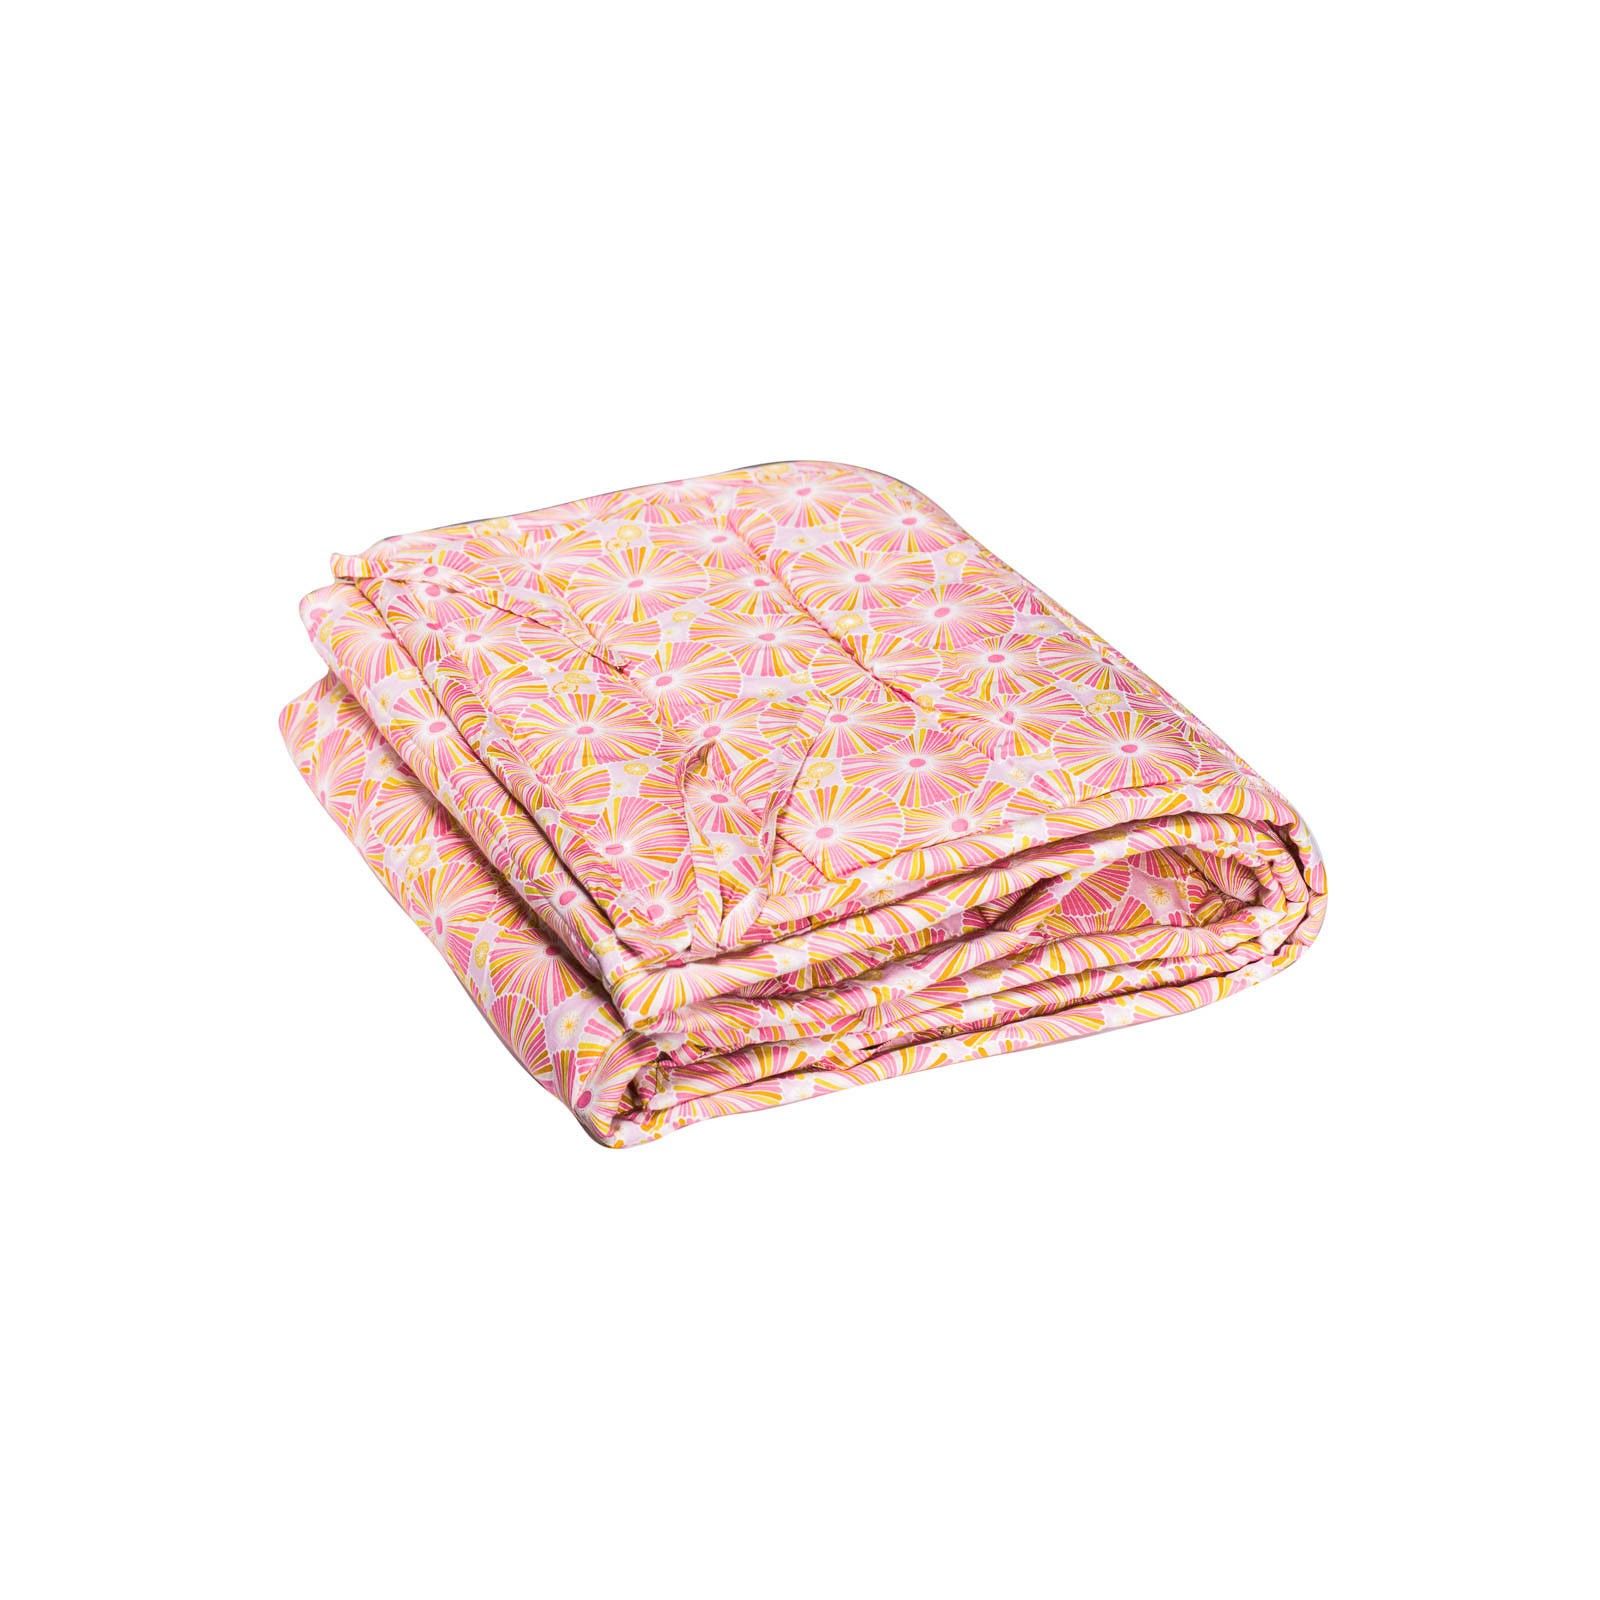 Tour de lit à barreaux fille tissu créateur rose